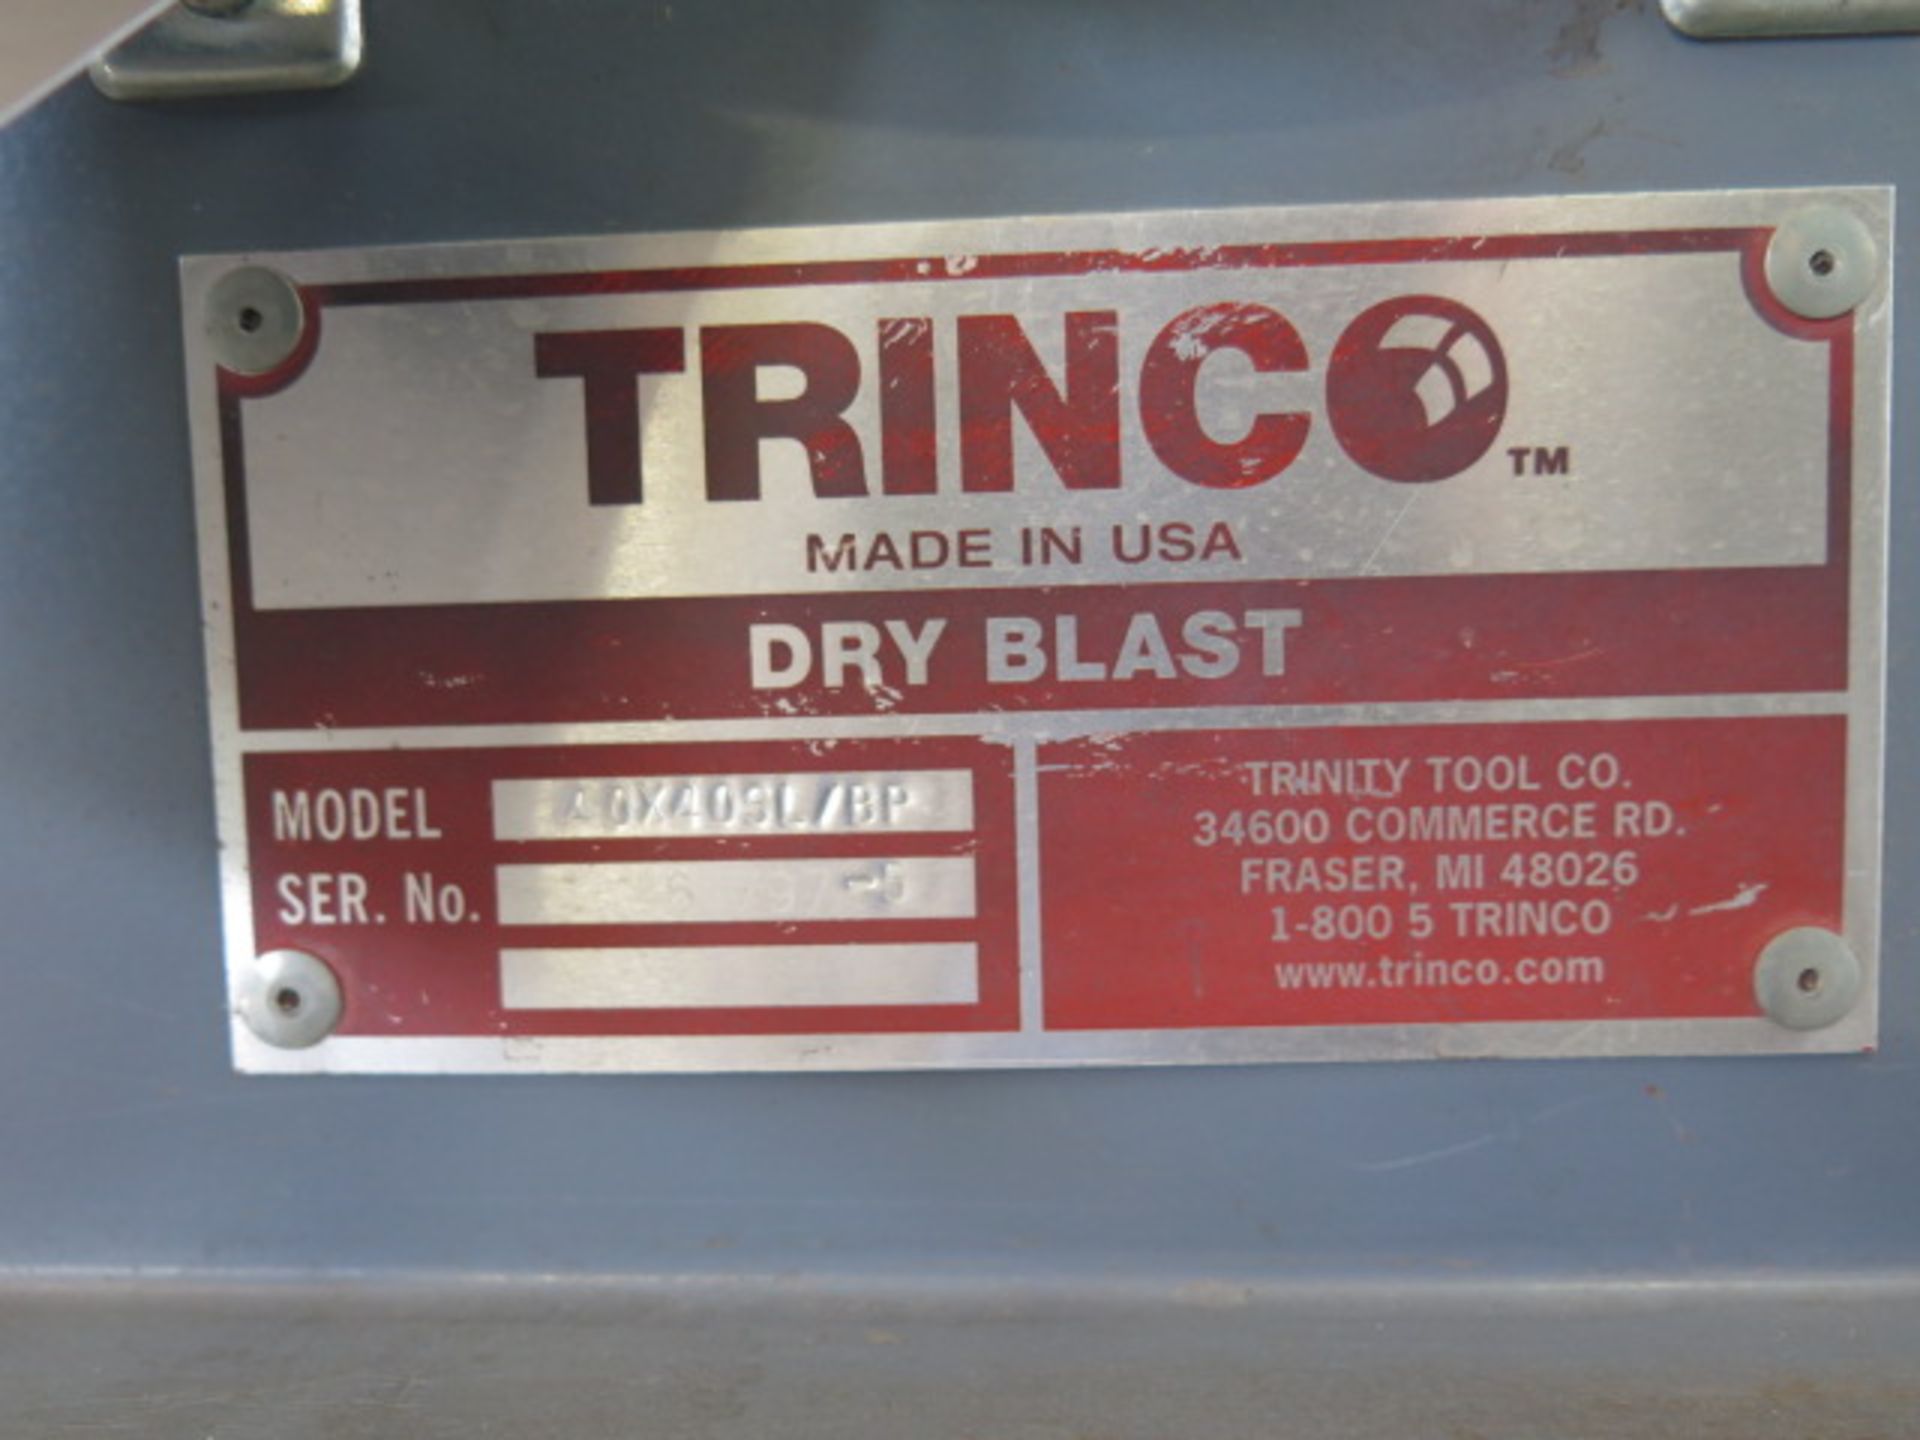 Trinco mdl. 40X40SL/BP 40” x 40” Flip-Top Dry Blast Cabinet s/n 61797-5 SOLD AS IS - Image 9 of 9